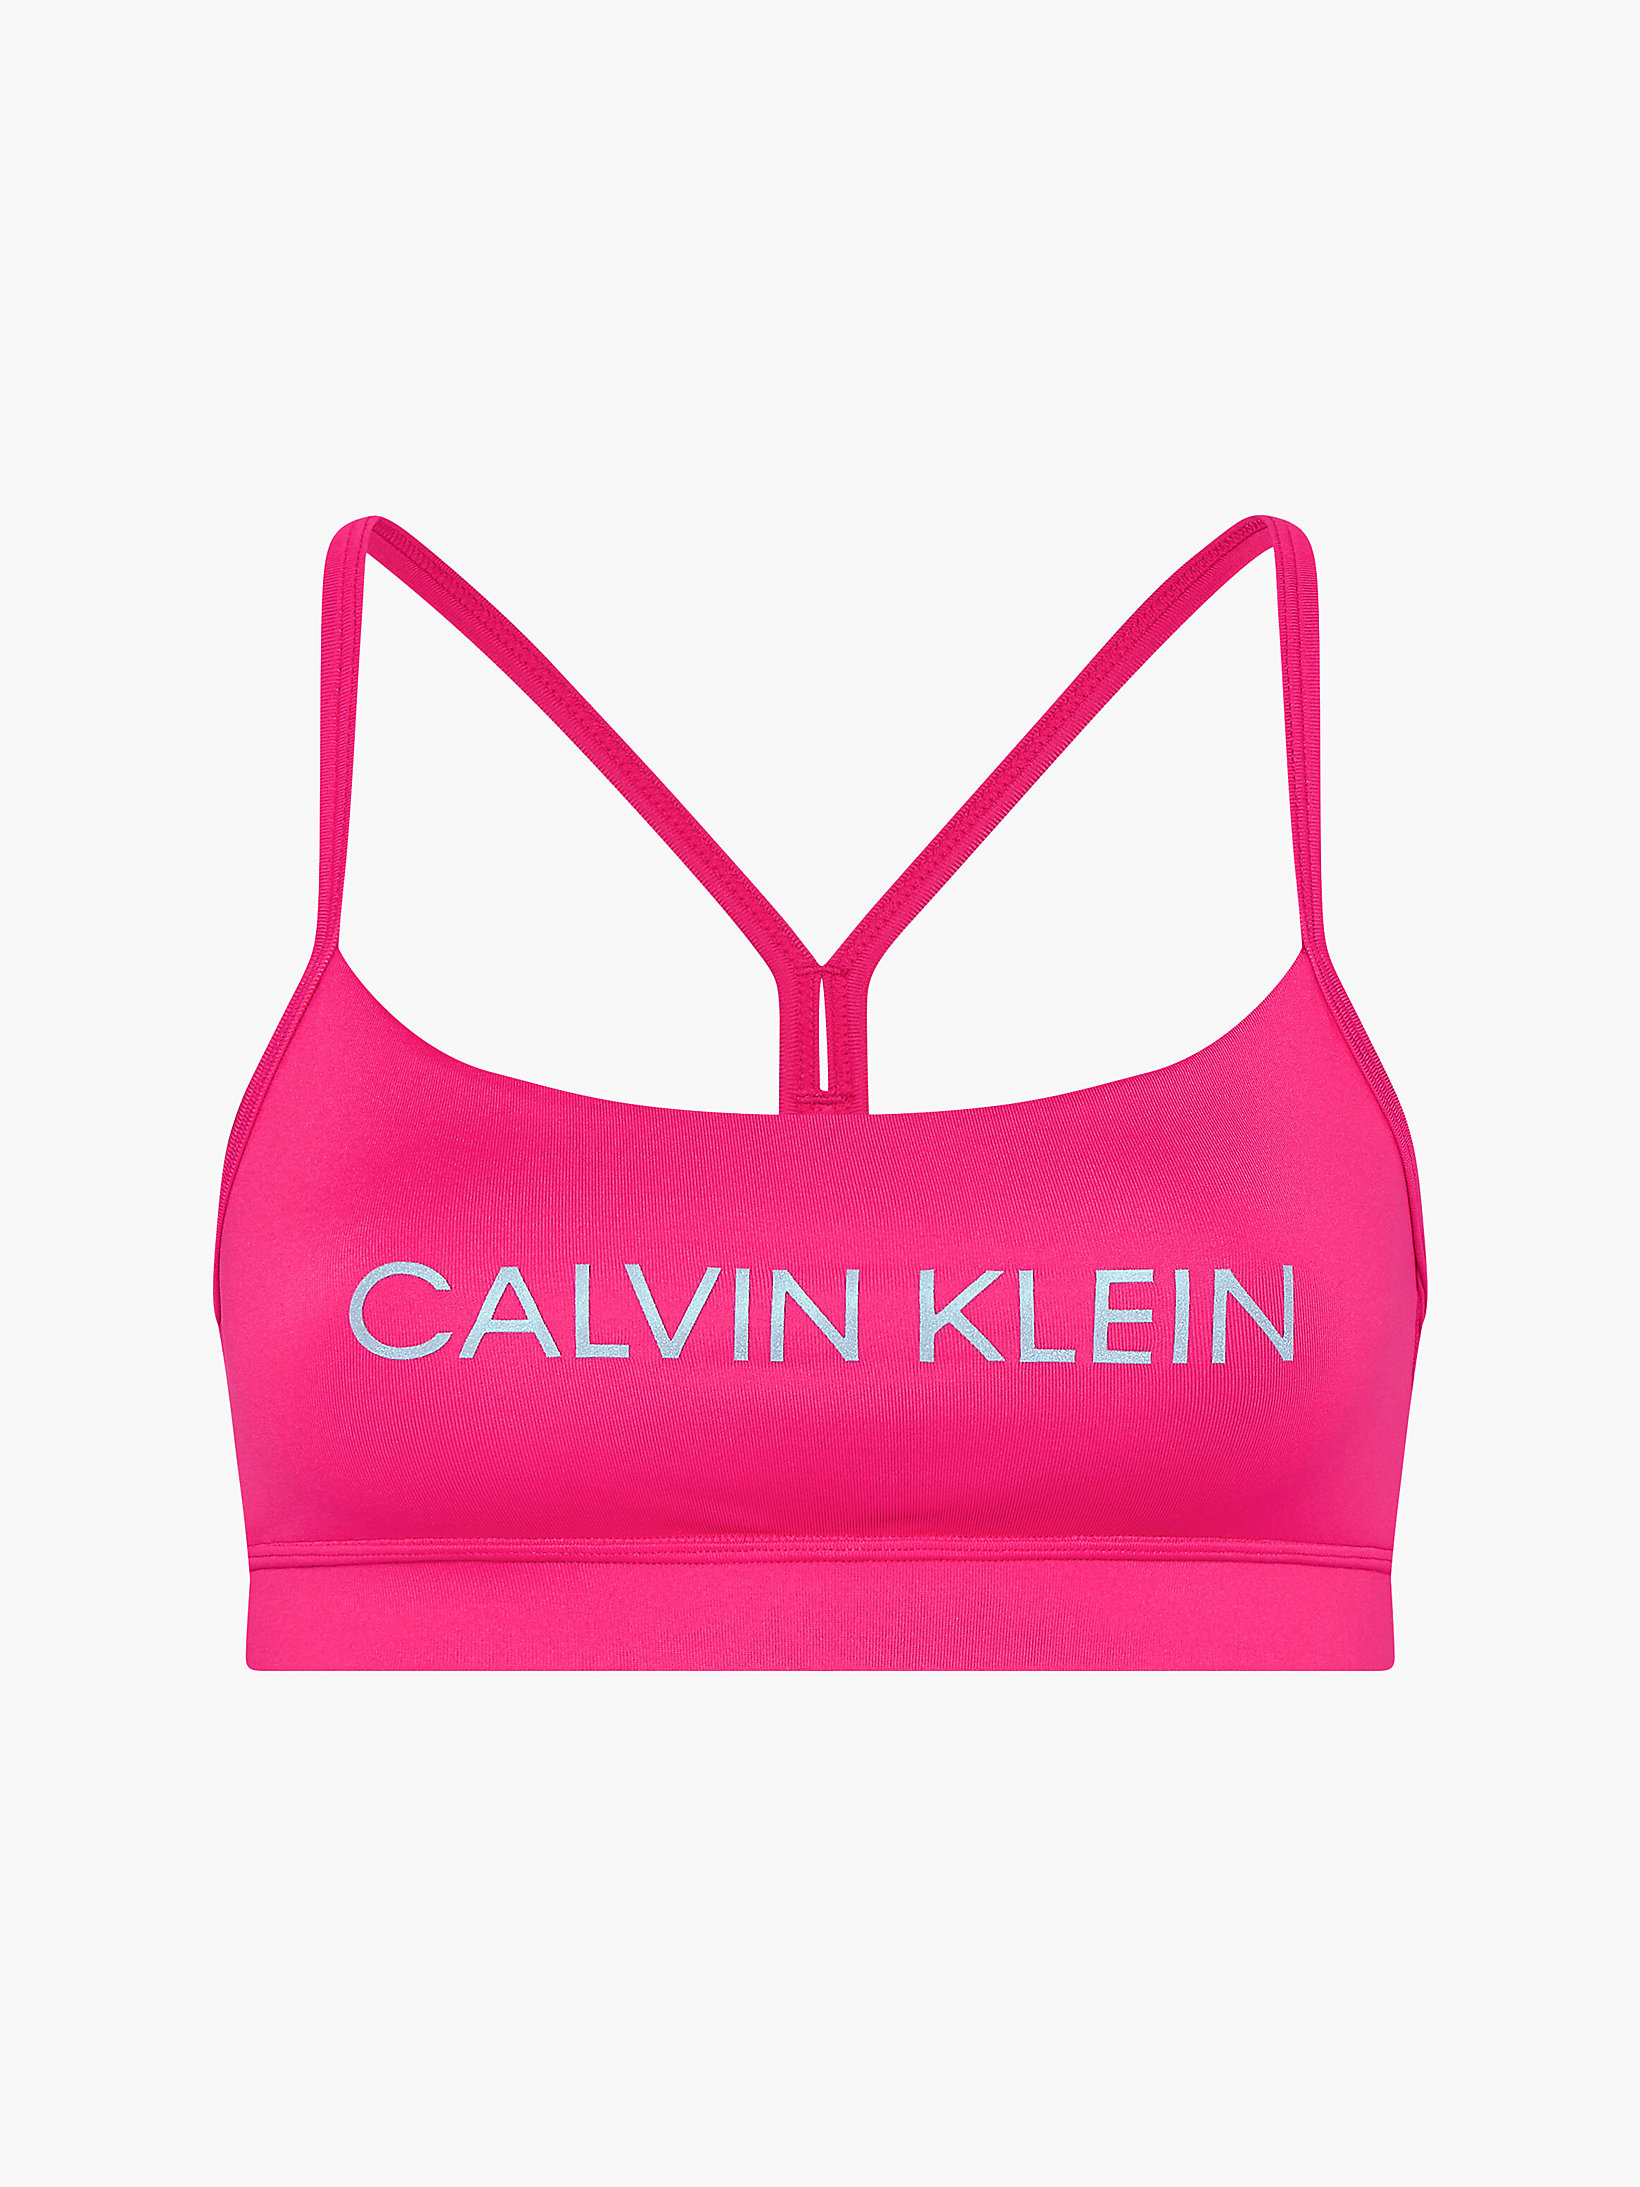 Beetroot Purple Low Impact Sports Bra undefined women Calvin Klein